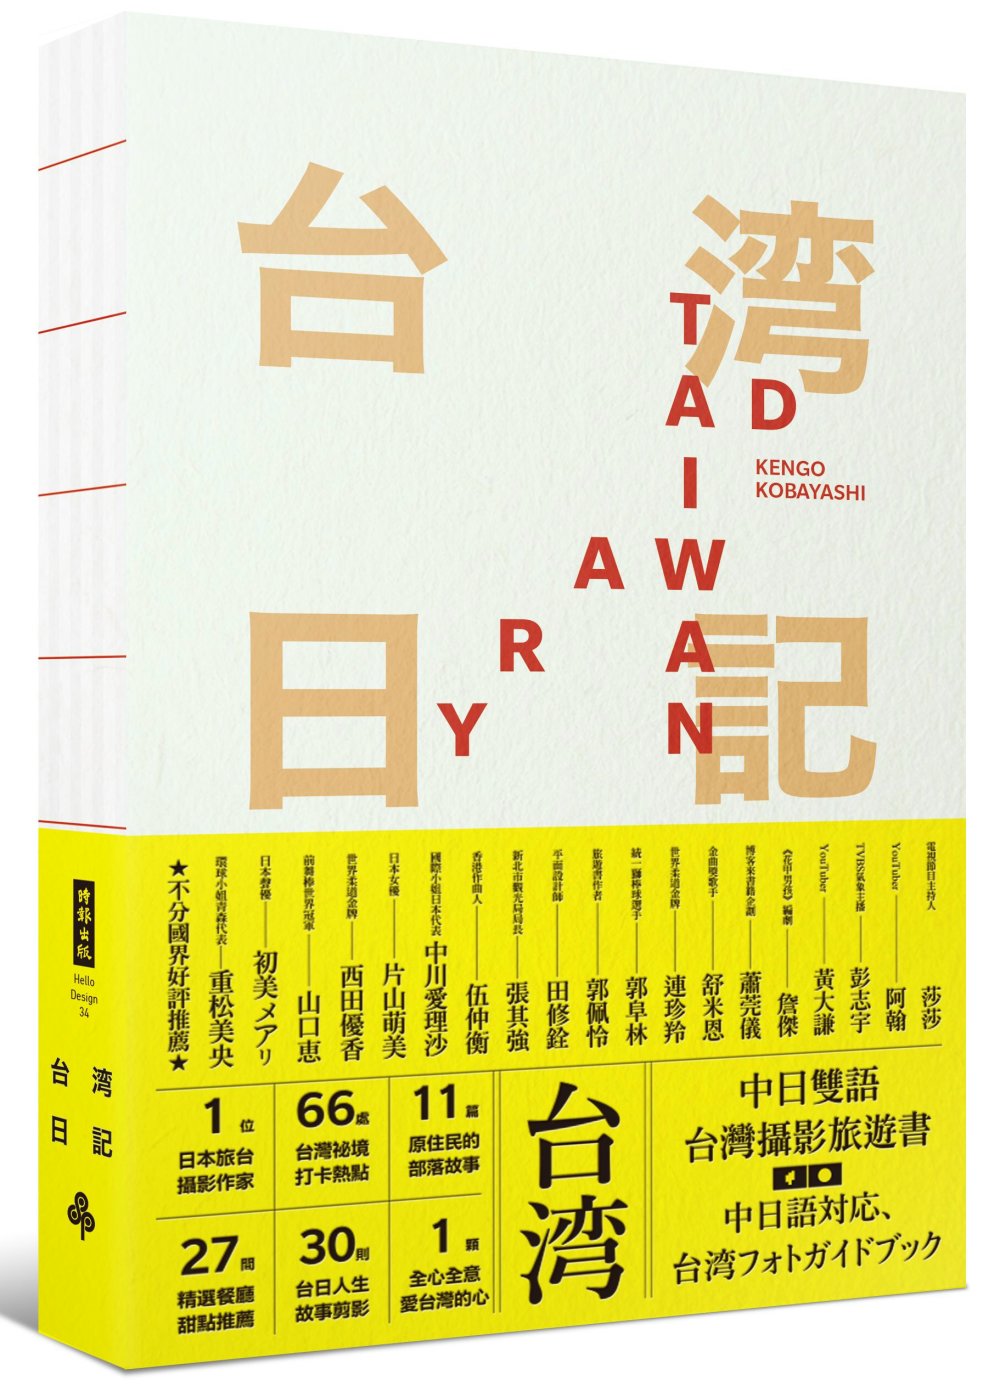 台湾日記 Taiwan Diary：我能做的，就是告訴全世界臺灣的美!